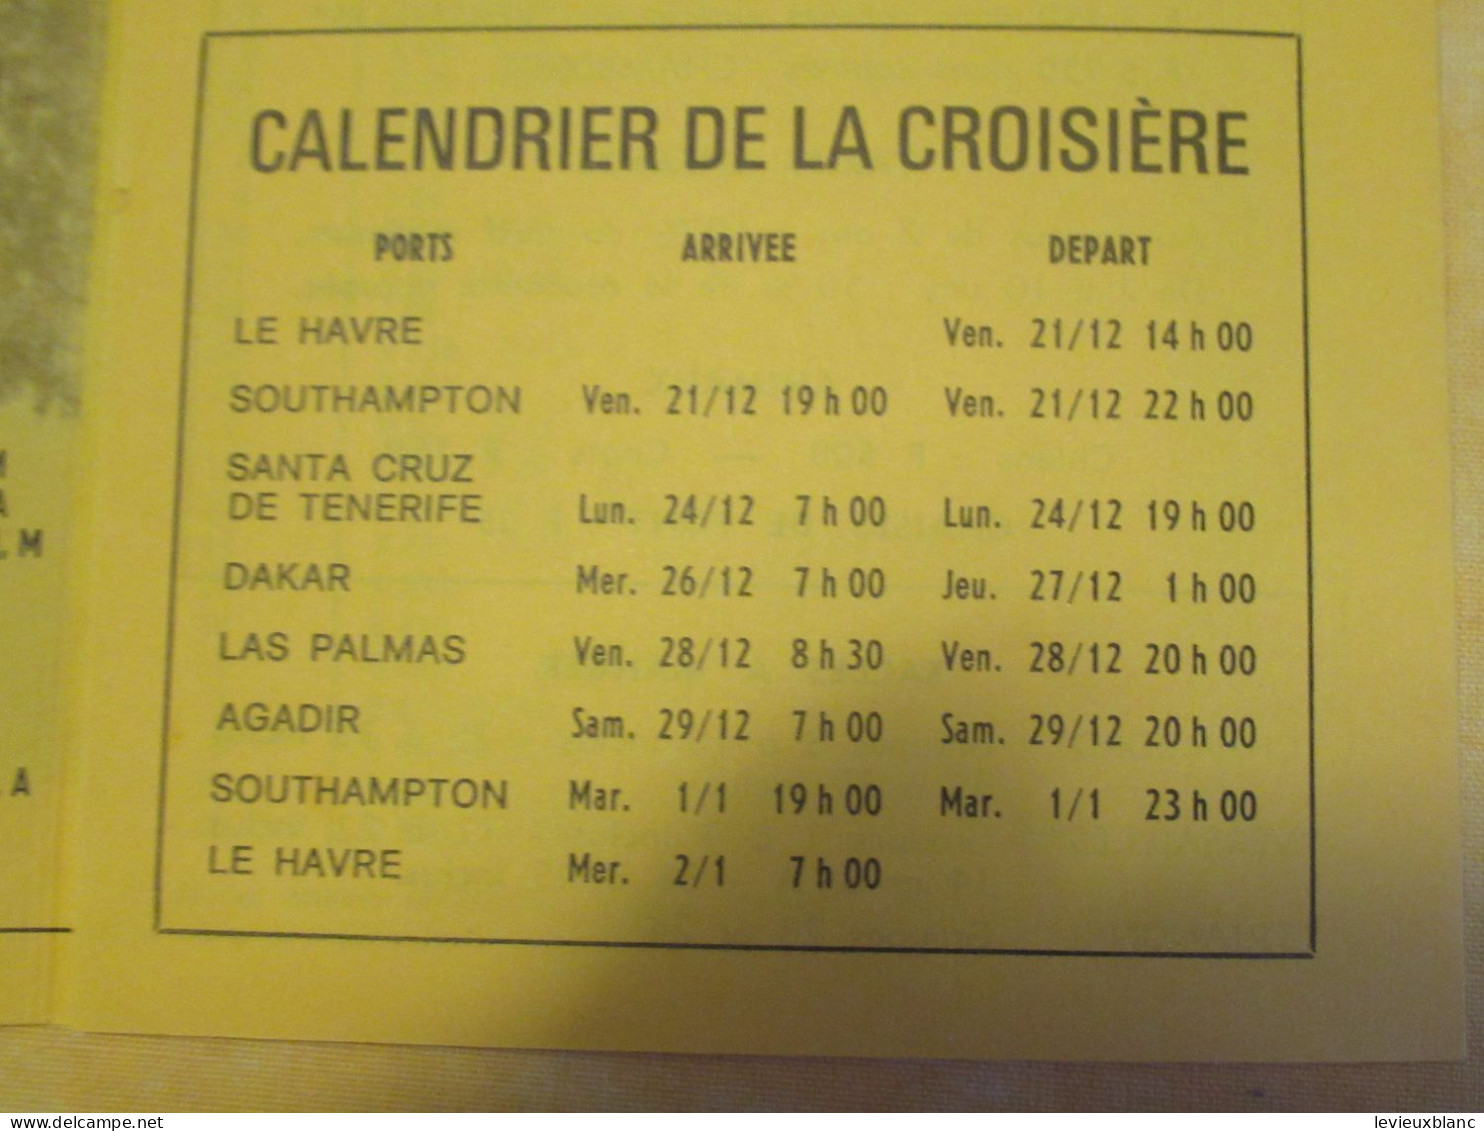 Marine/Transat/Croisière  Noël &  Jour De L'An/ Canaries-Sénégal-Maroc /Paquebot " FRANCE "/21 Déc 73 -2 Janv 74   DT174 - Reiseprospekte